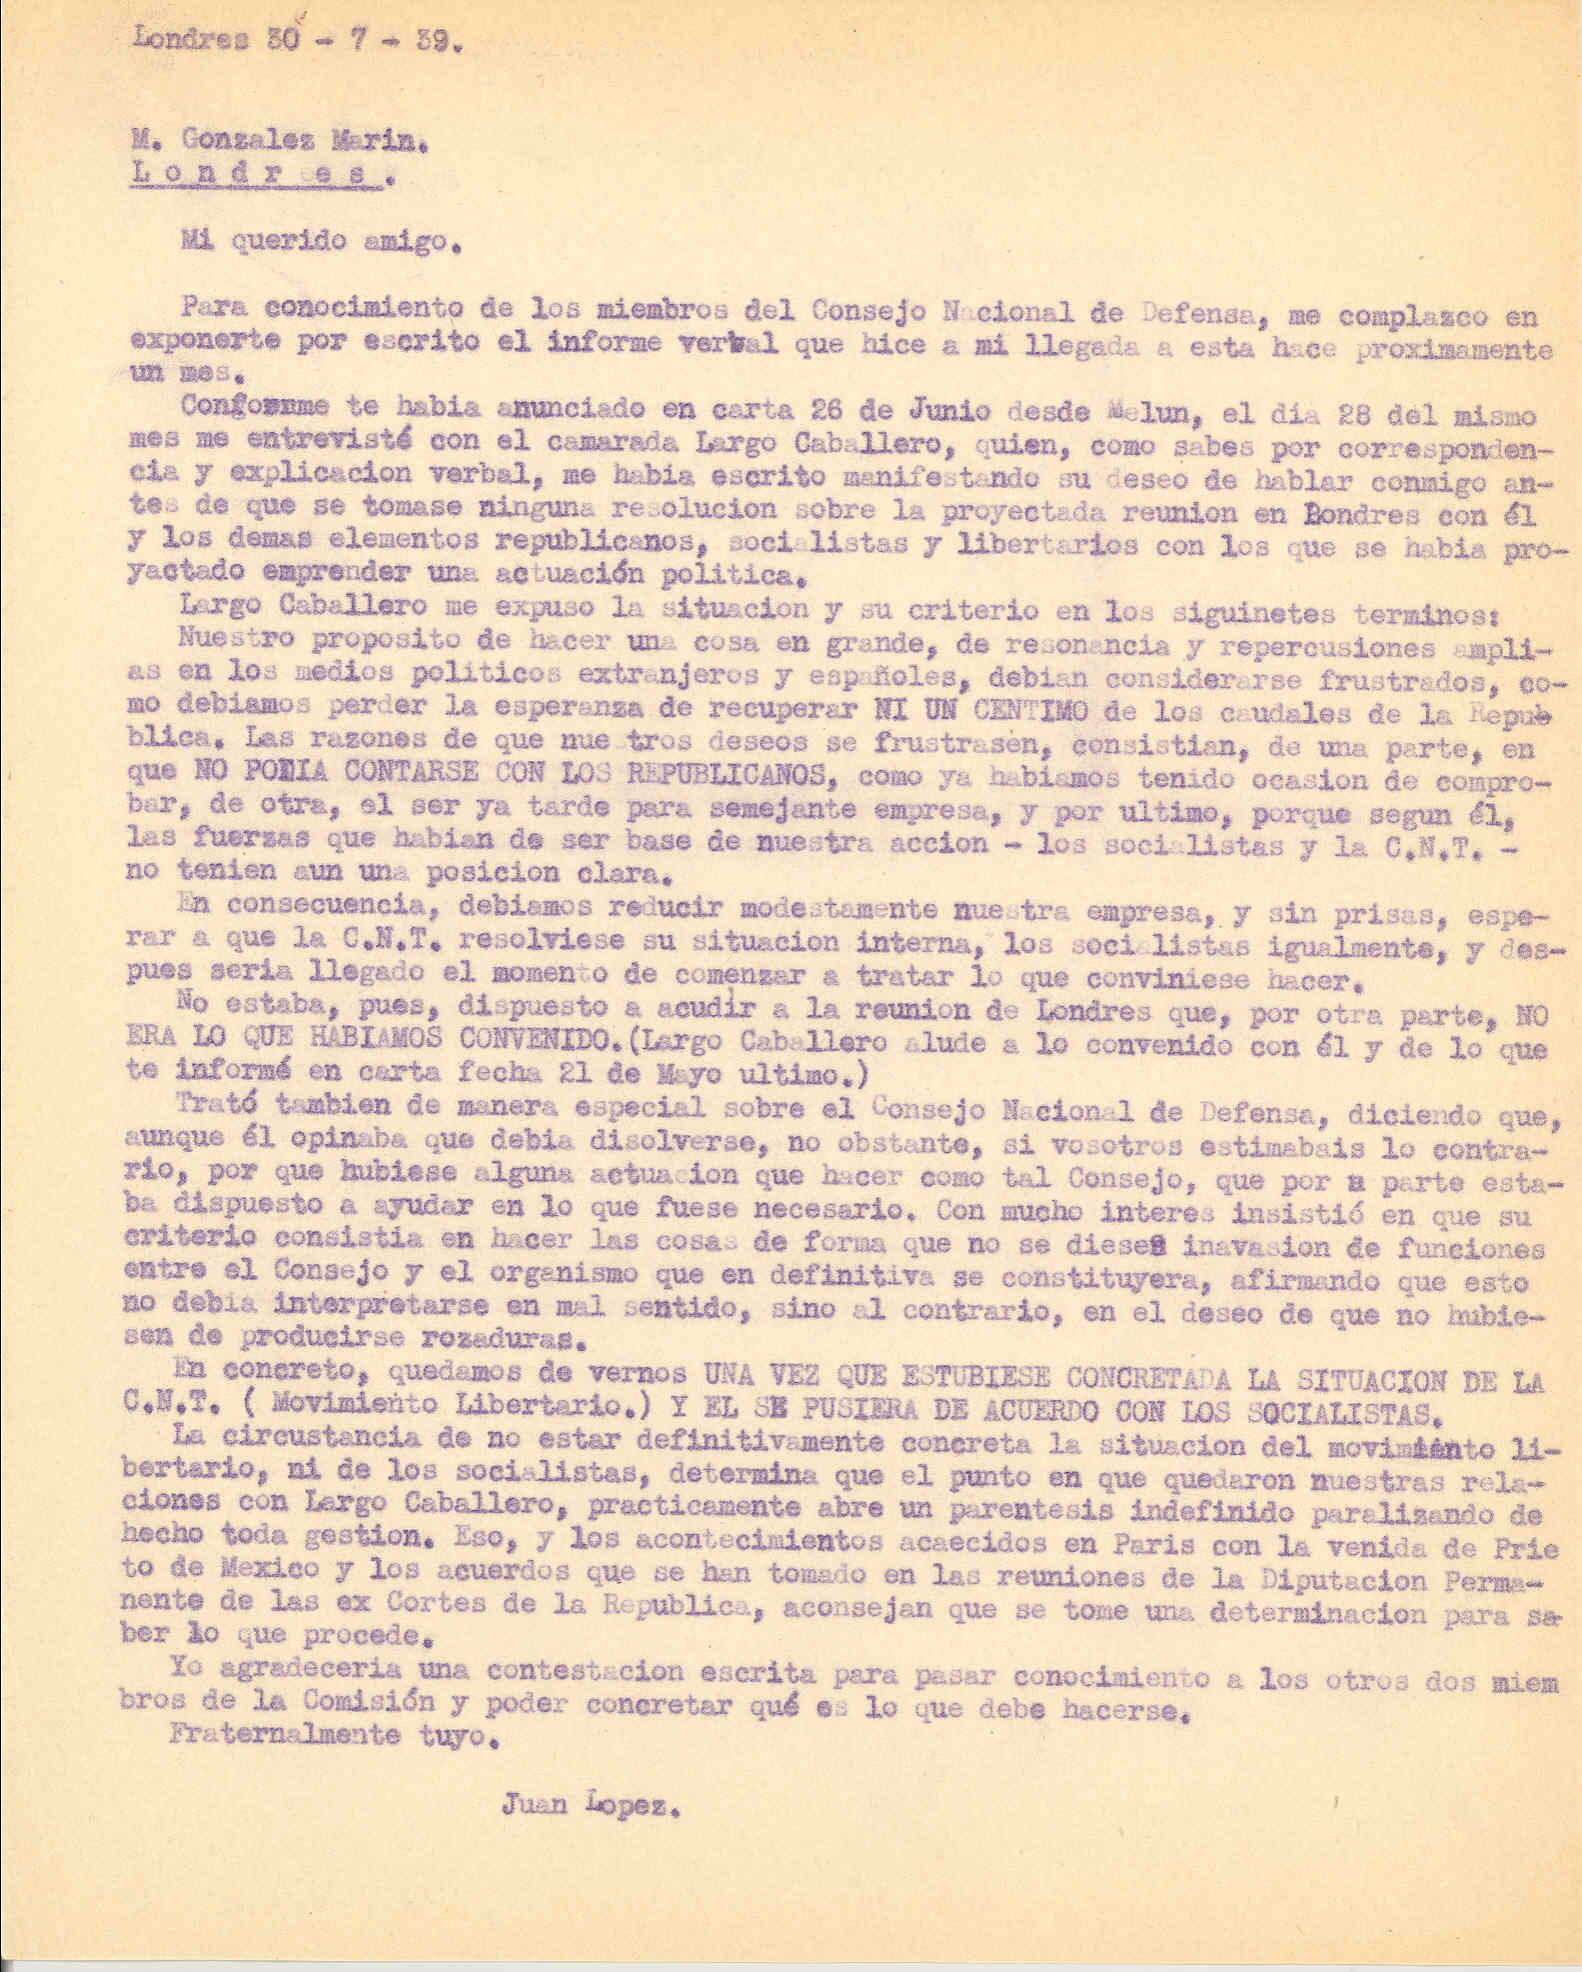 Carta-informe a González Marín relatando los términos de la entrevista mantenida con Largo Caballero, el 28 de junio, en la que dejó en suspenso la formación de un organismo formado por dirigientes socilalistas, republicanos y libertarios